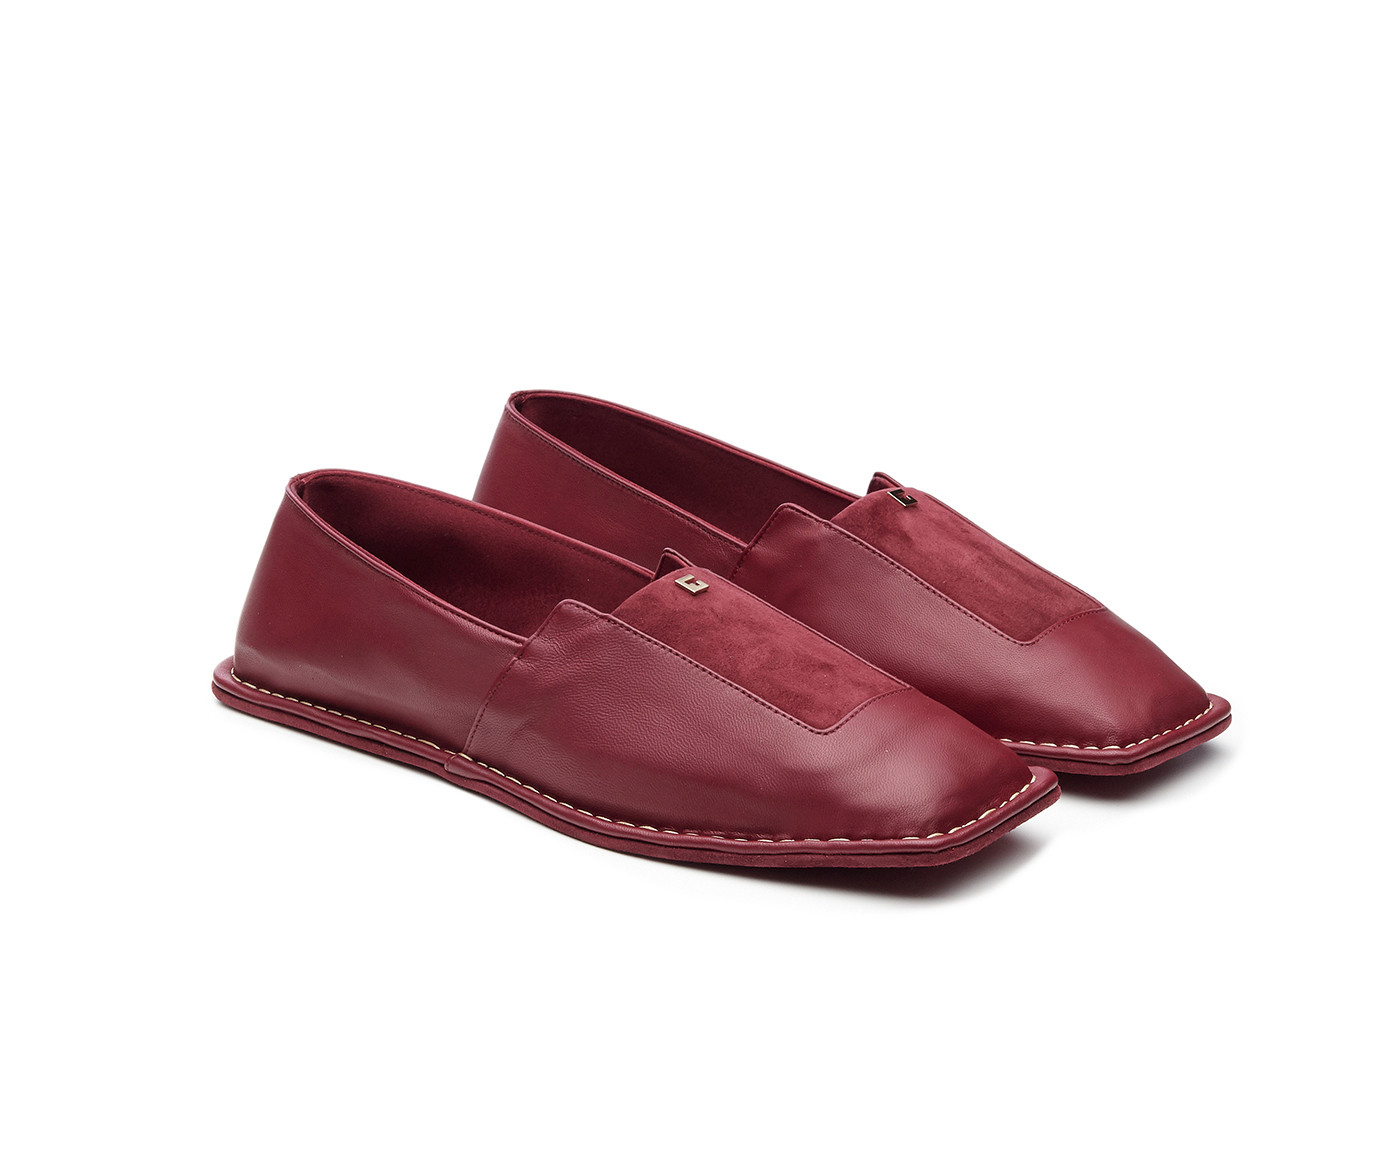 Giordano Torresi shoes | IANUS